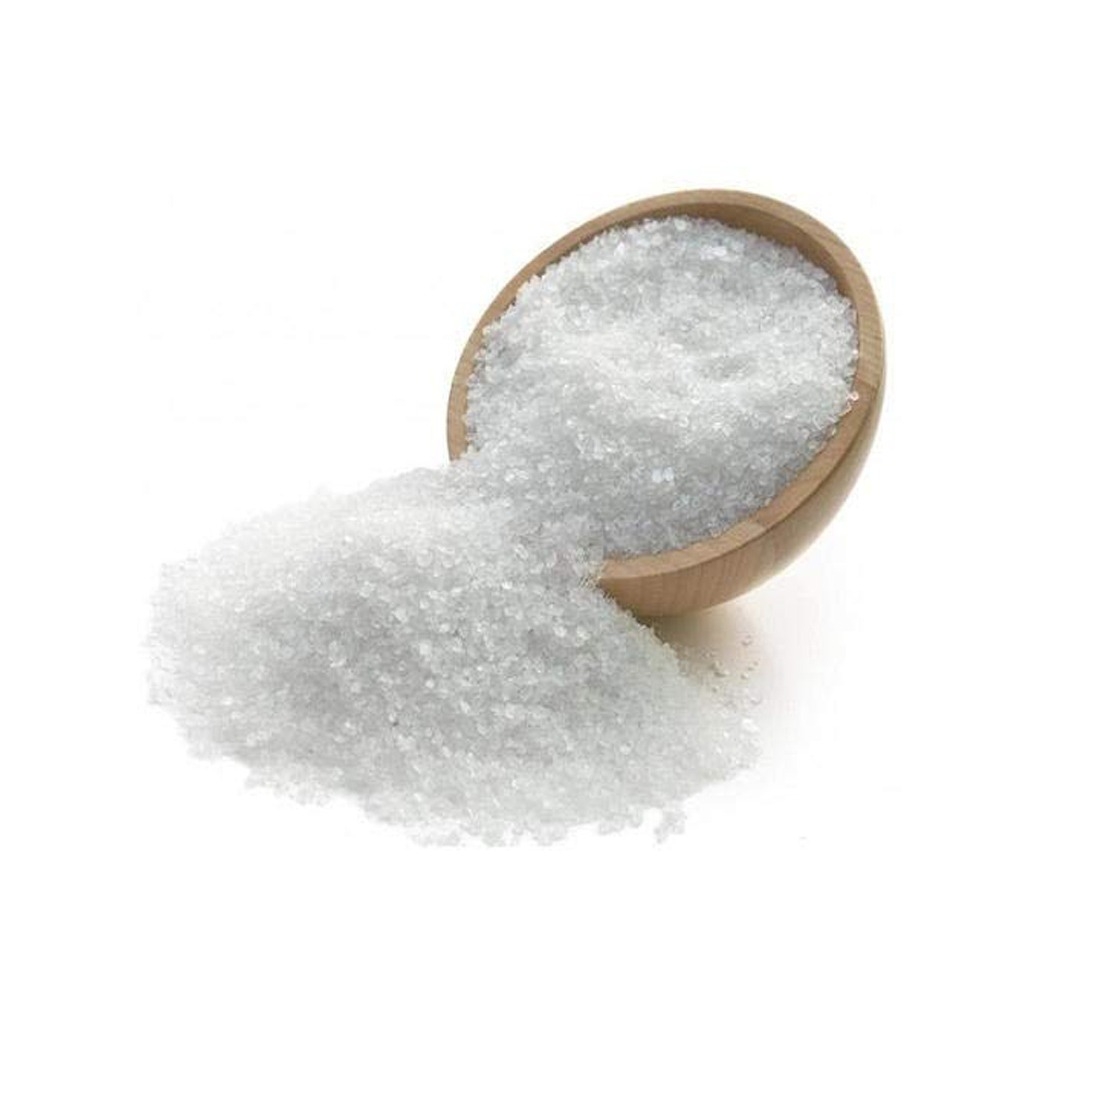 OEHB Epsom Salt Magnesium sulfate for Terrace Garden 900 gm